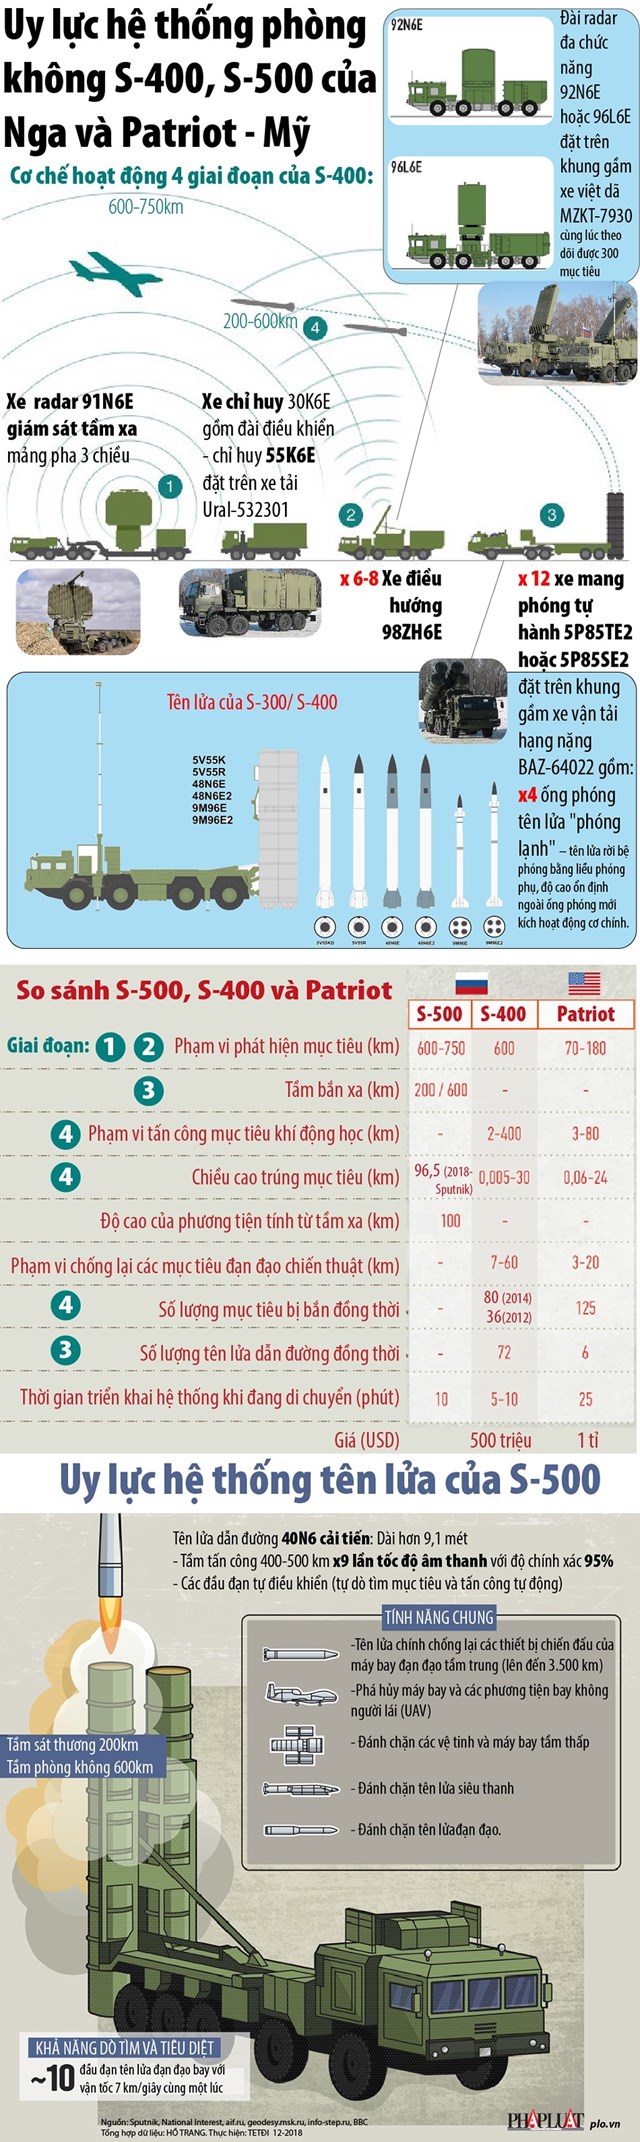 [Infographic] Uy lực hệ thống phòng thủ S-400, S-500 của Nga và Patriot - Mỹ - Ảnh 1